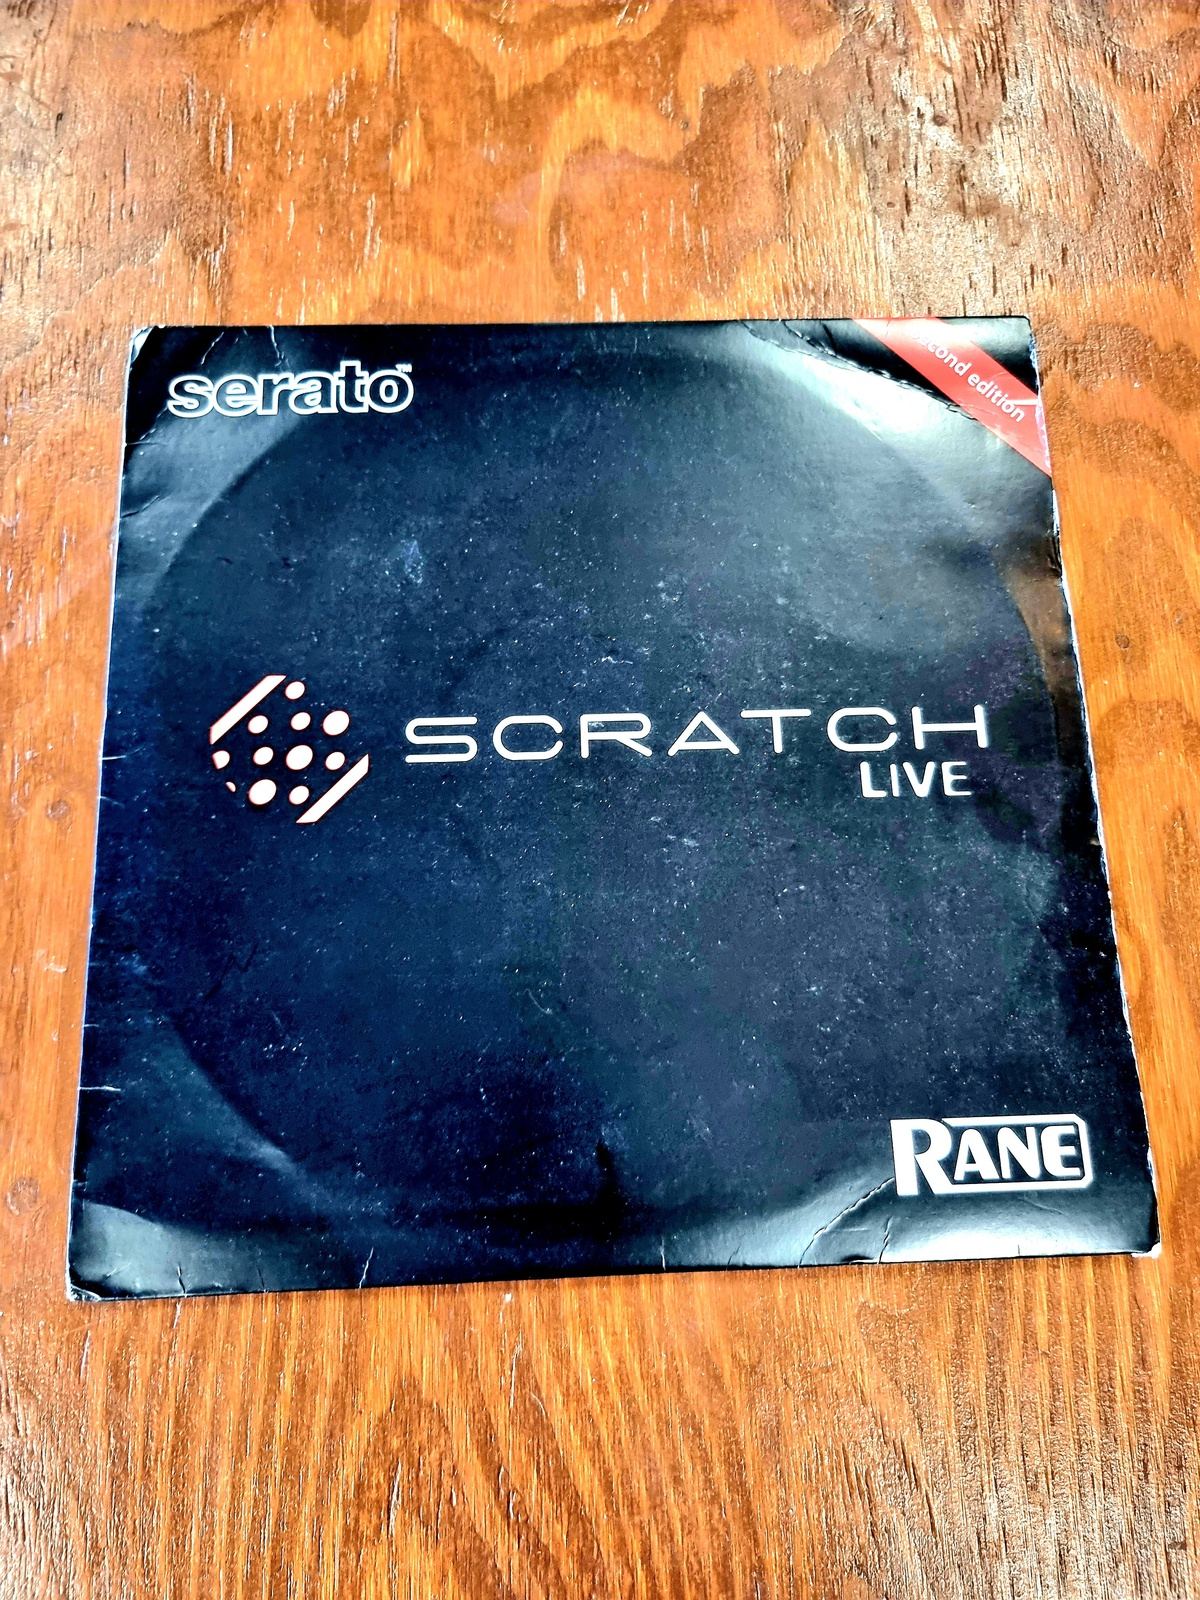 No Artist – Serato Scratch Live Control Record - 2nd Edition